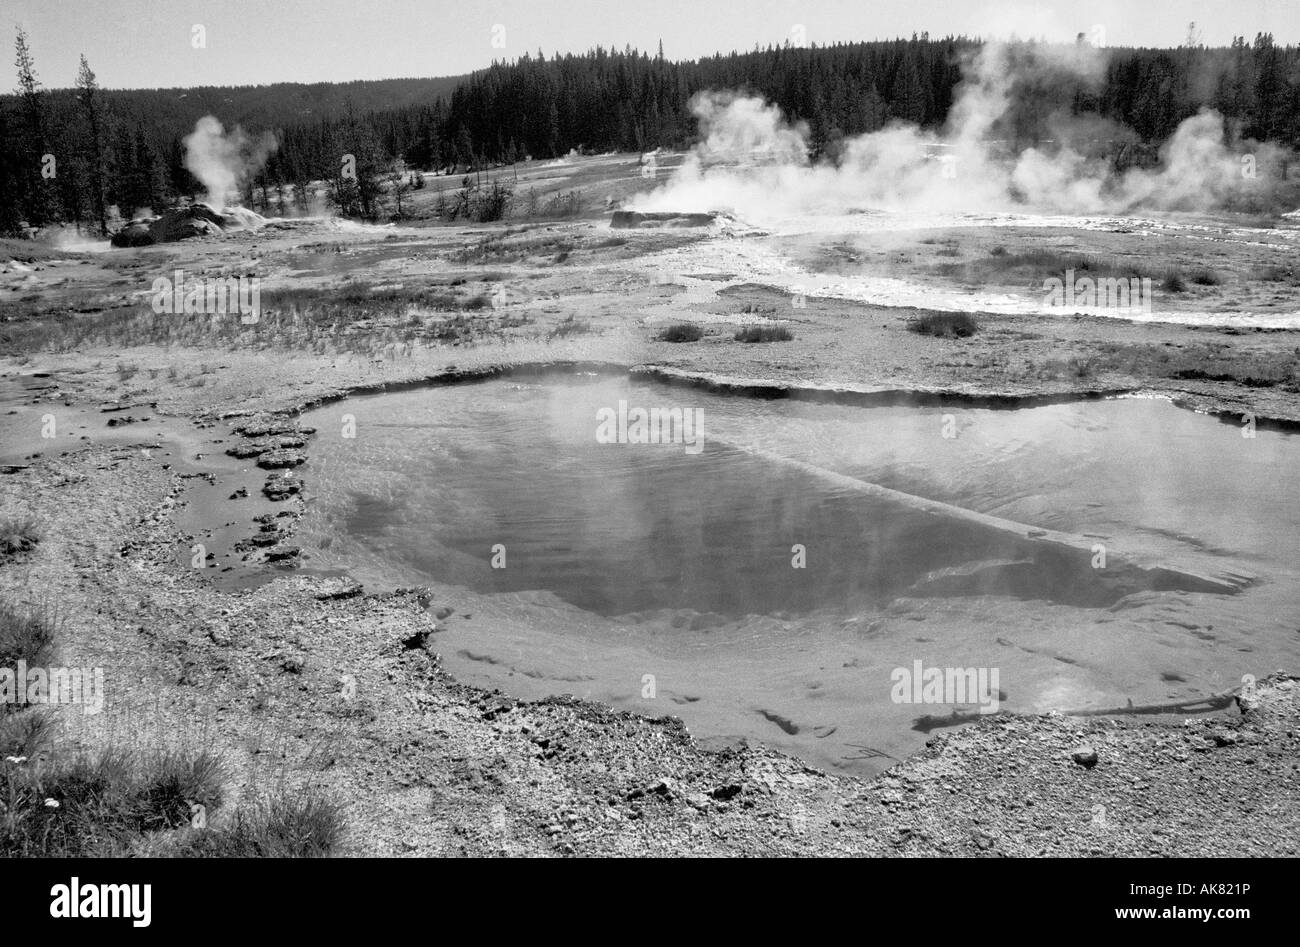 Piscina d'acqua calda e un geyser erutting sullo sfondo, Yellowstone National Park, Wyoming, USA. Sito patrimonio dell'umanità dell'UNESCO. Foto Stock